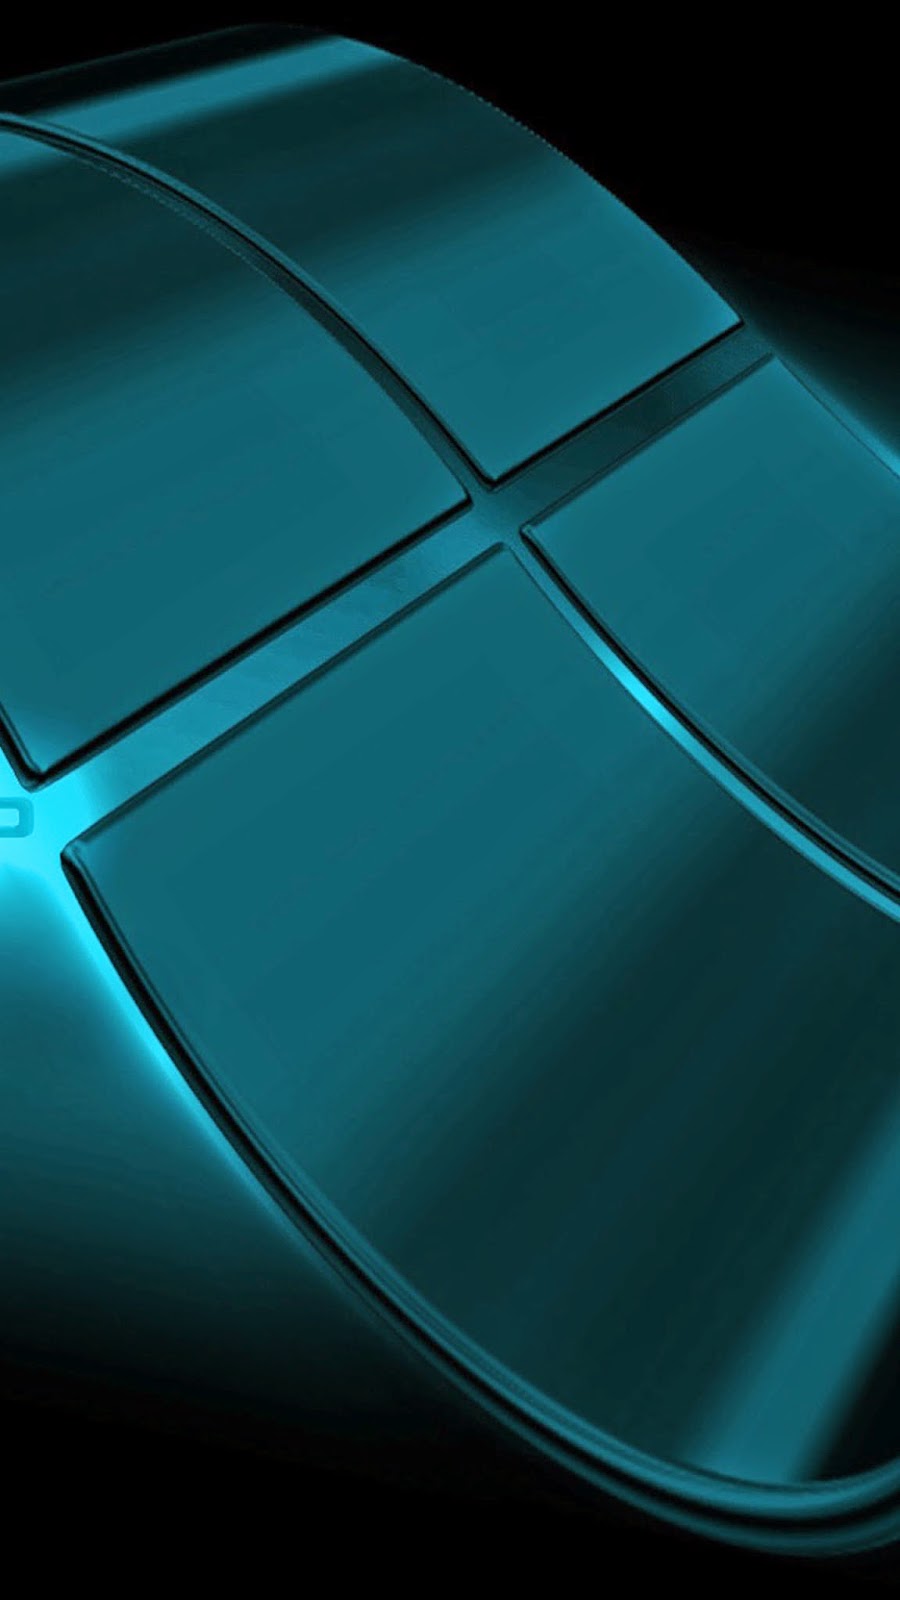 fond d'écran samsung s6 edge,bleu,vert,capuche,aqua,turquoise